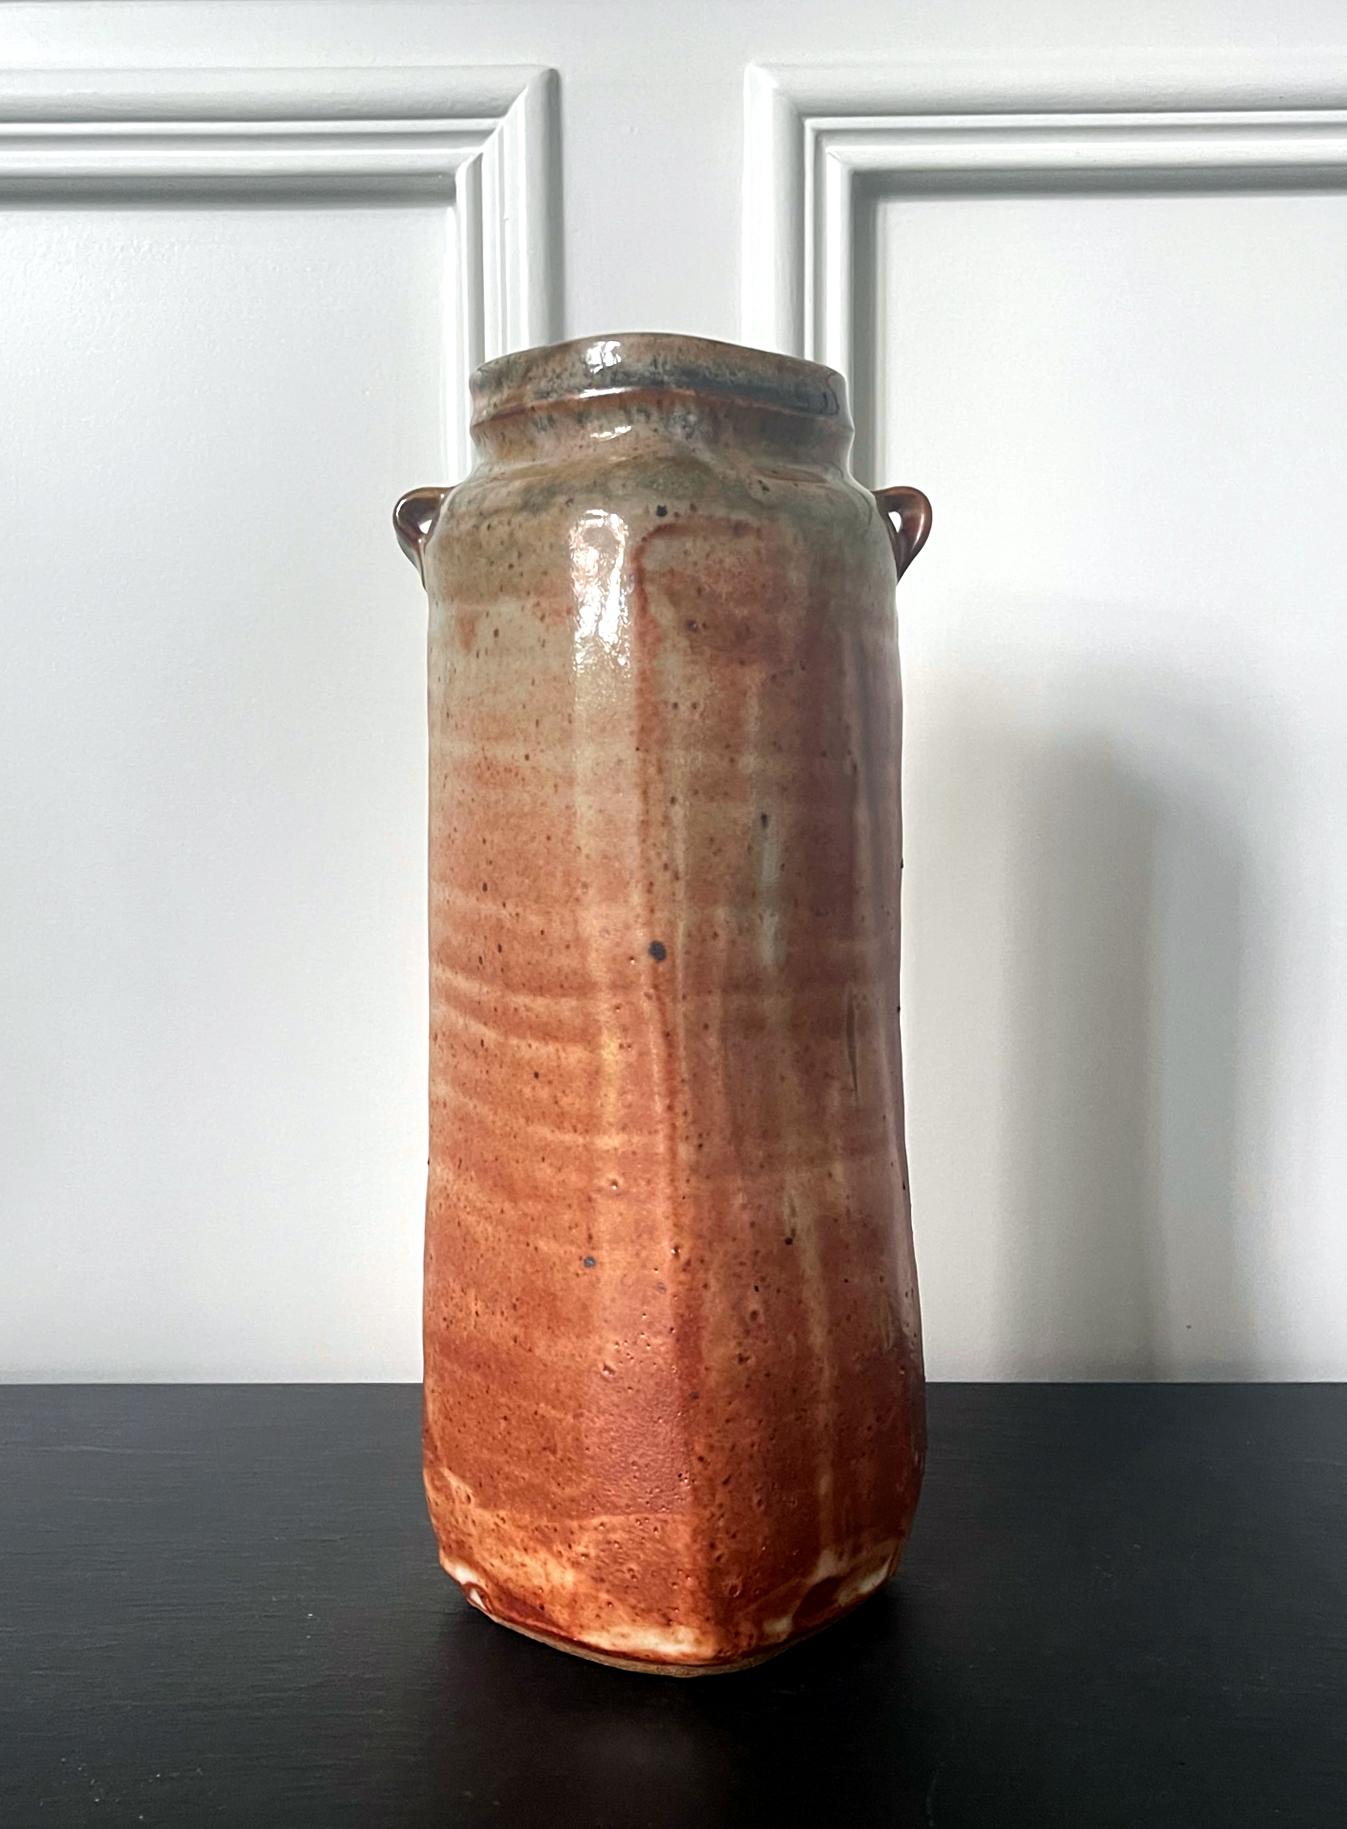 Hohe zylinderförmige Steinzeugvase des amerikanischen Töpfers Warren MacKenzie (1924-2018). Die Vase hat eine leicht zweideutige Form zwischen Kreis und Quadrat und weist zwei kleine Schlaufen an der Schulter auf. Die Oberfläche ist mit einer